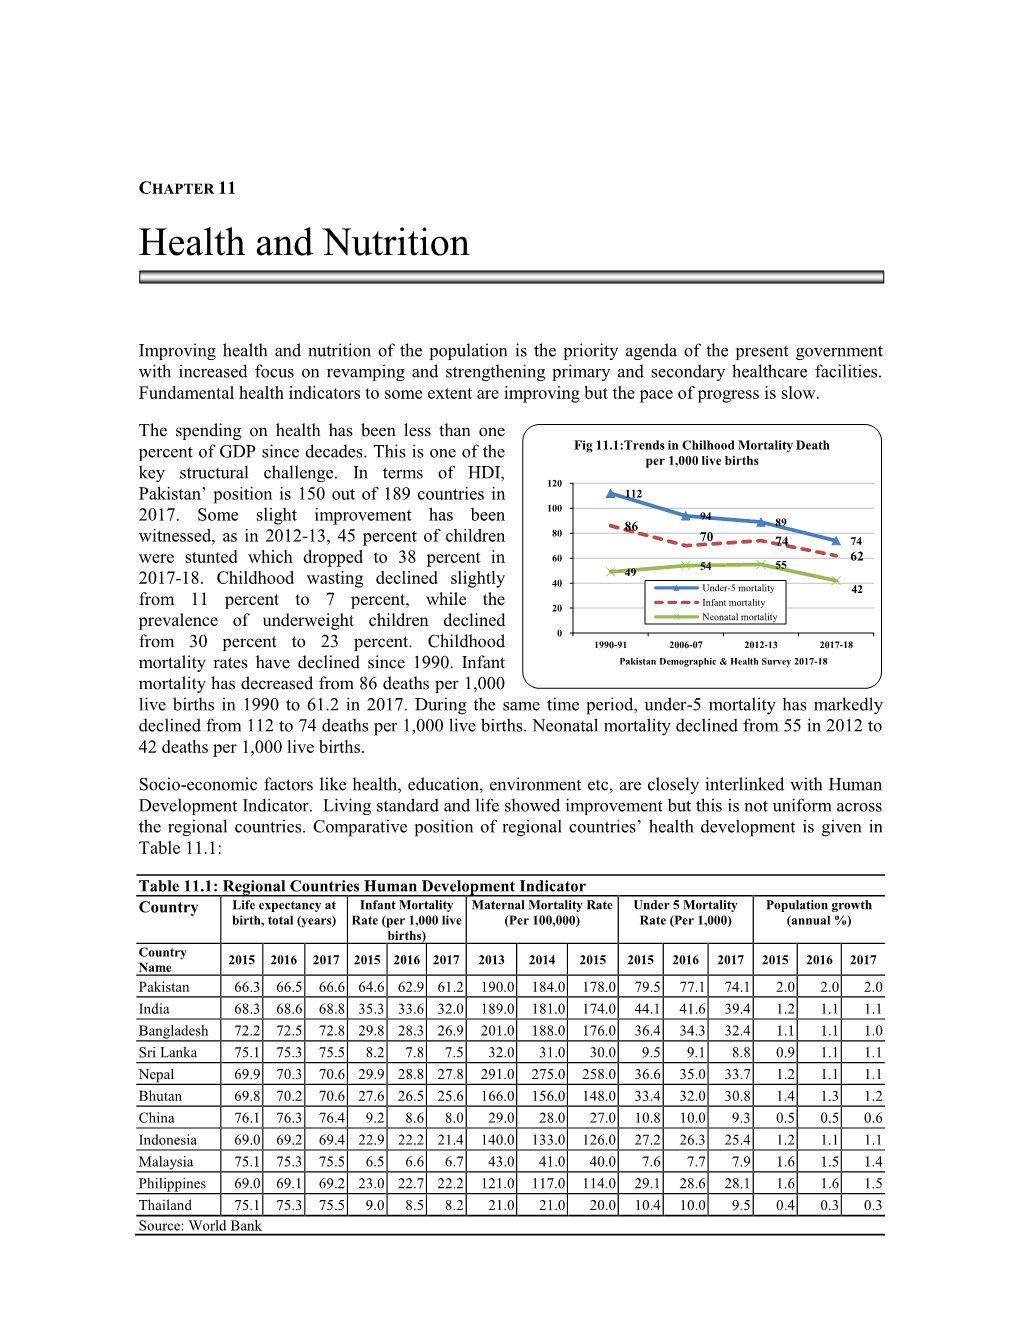 Pakistan Economic Survey 2018-19. Health and Nutrition